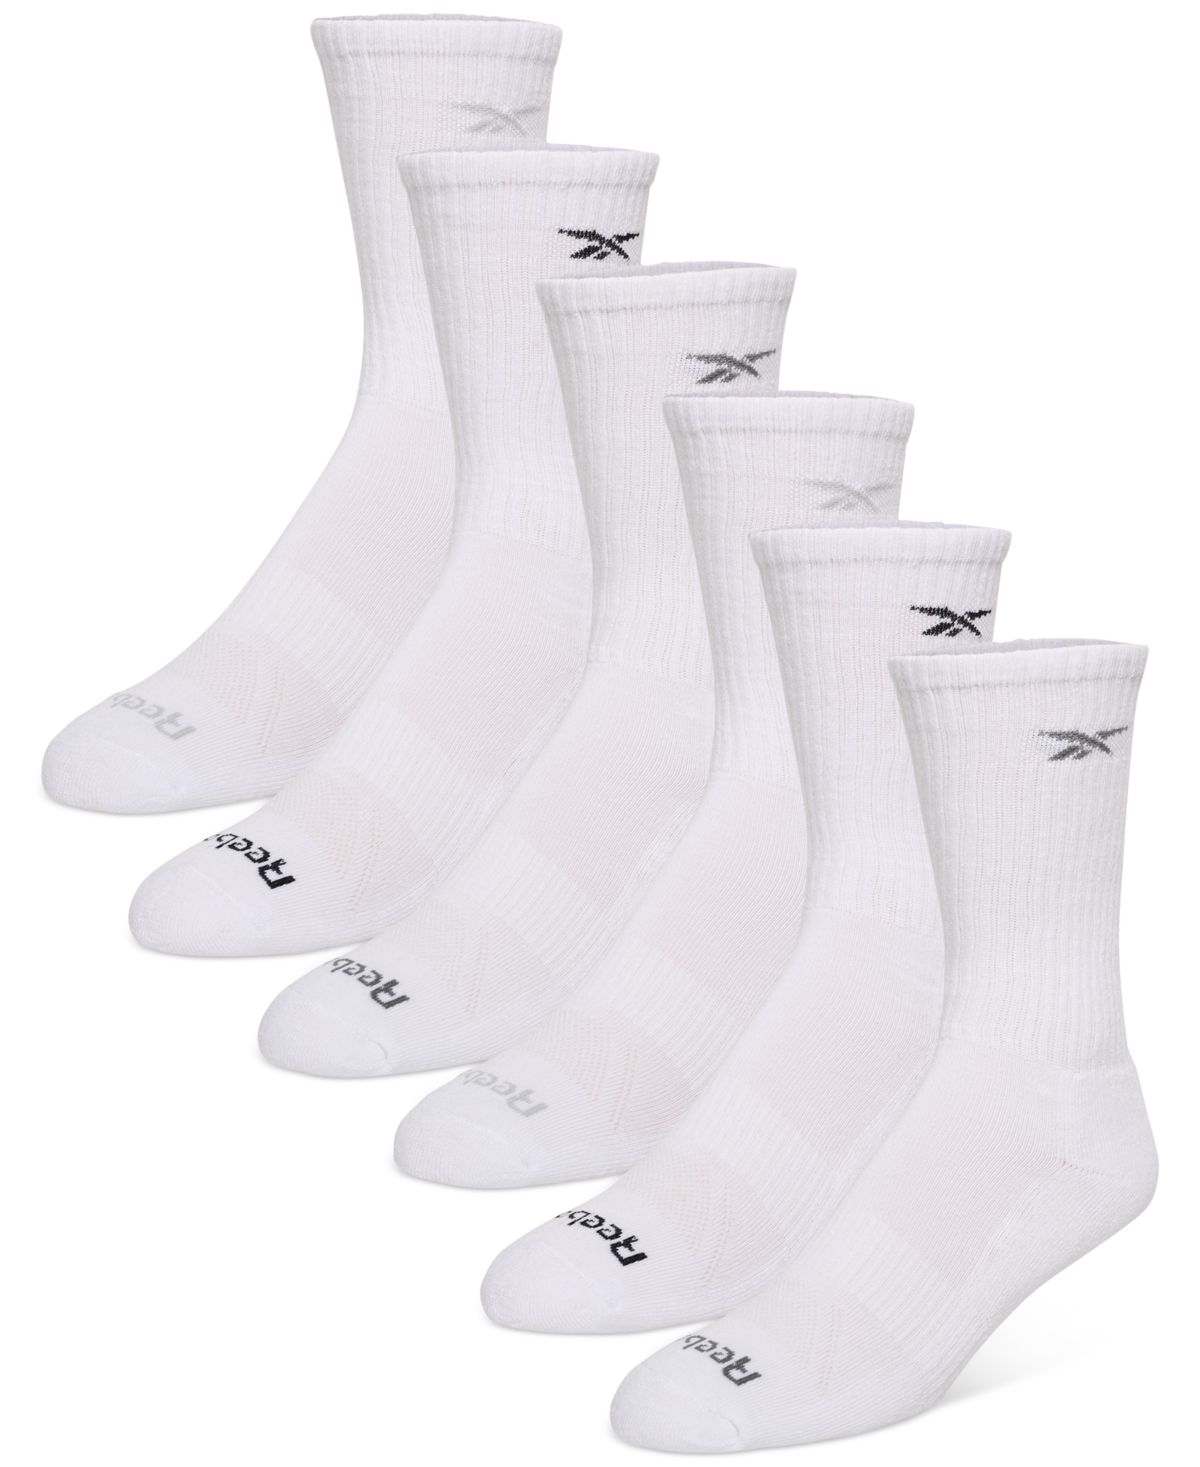 Reebok Men's 6-pk. 1/2 Terry Performance Quarter Socks In White